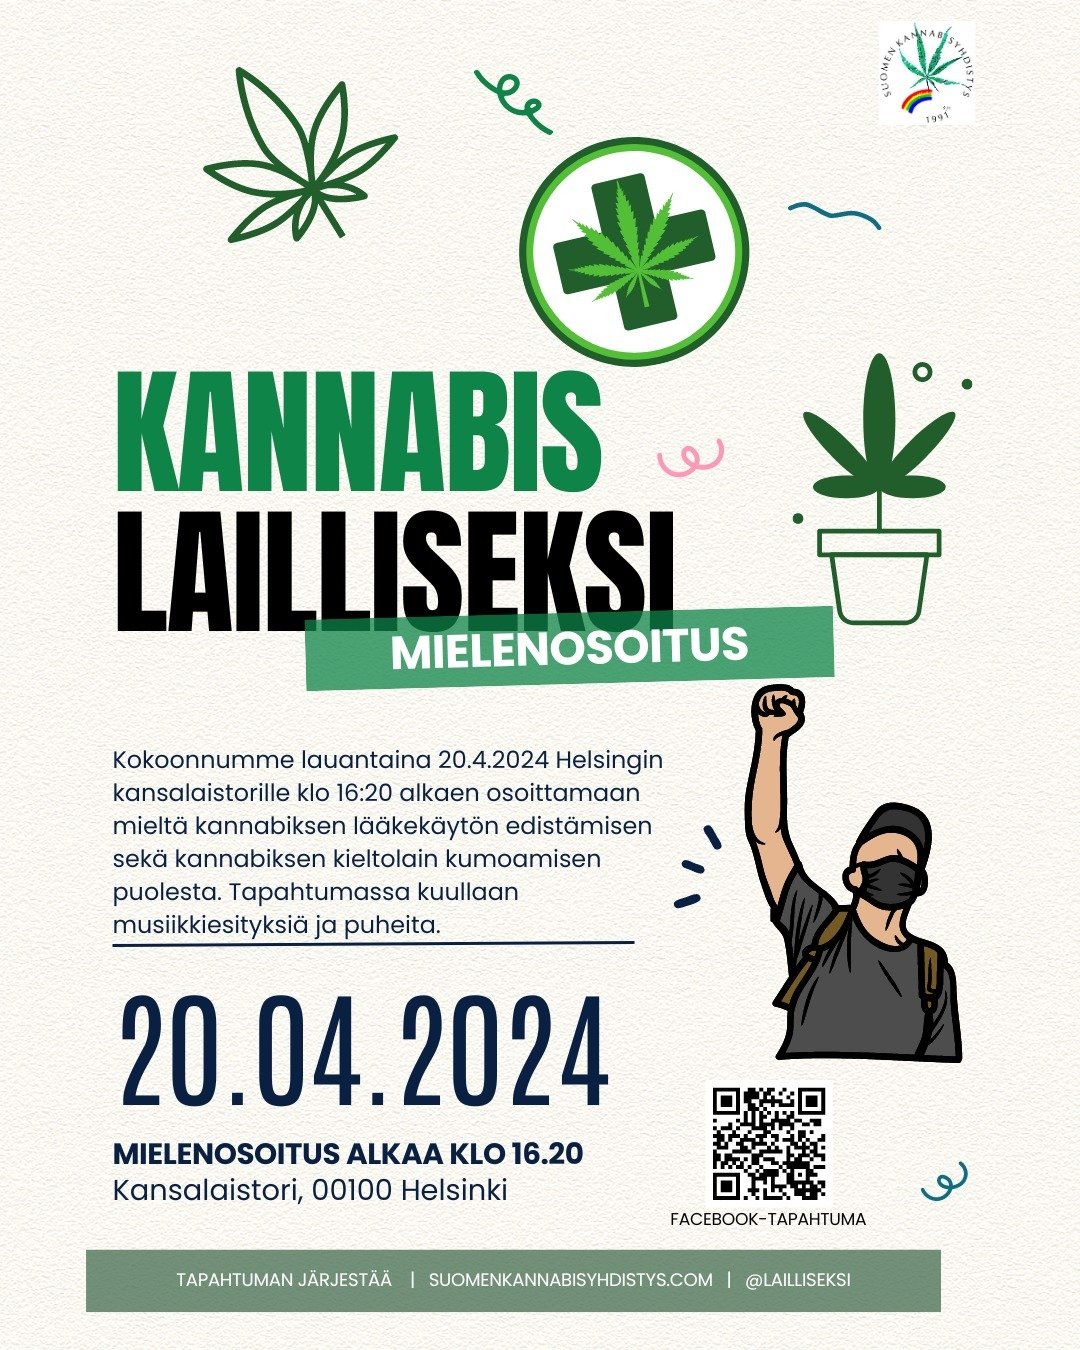 Hei kaikki!

Kutsumme teid&auml;t kaikki yhteen Helsinkiin, kansalaistorille 20.4., osallistumaan mielenosoitukseen kannabiksen laillistamisen ja l&auml;&auml;kek&auml;yt&ouml;n edist&auml;misen puolesta. T&auml;m&auml; on tilaisuutemme n&auml;ytt&au